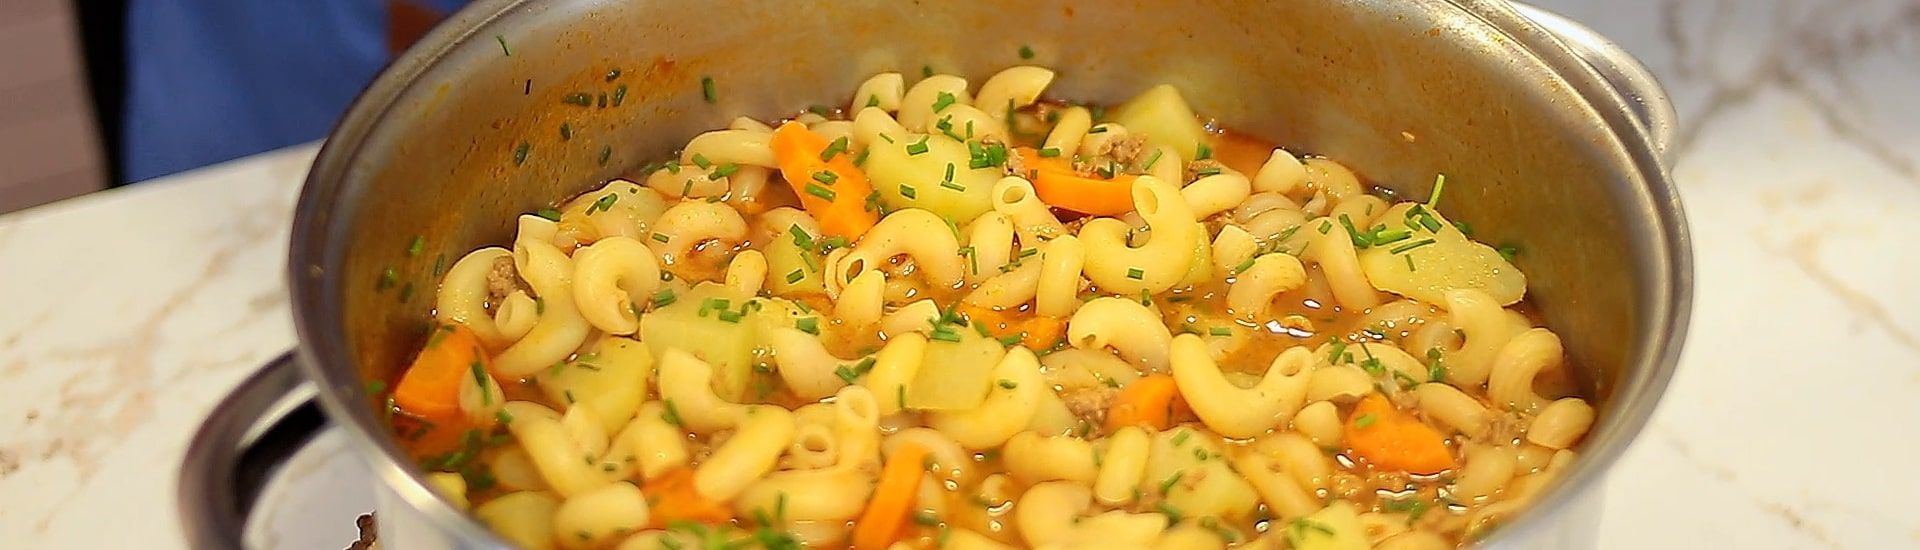 Sopa de macarrão com carne moída e legumes